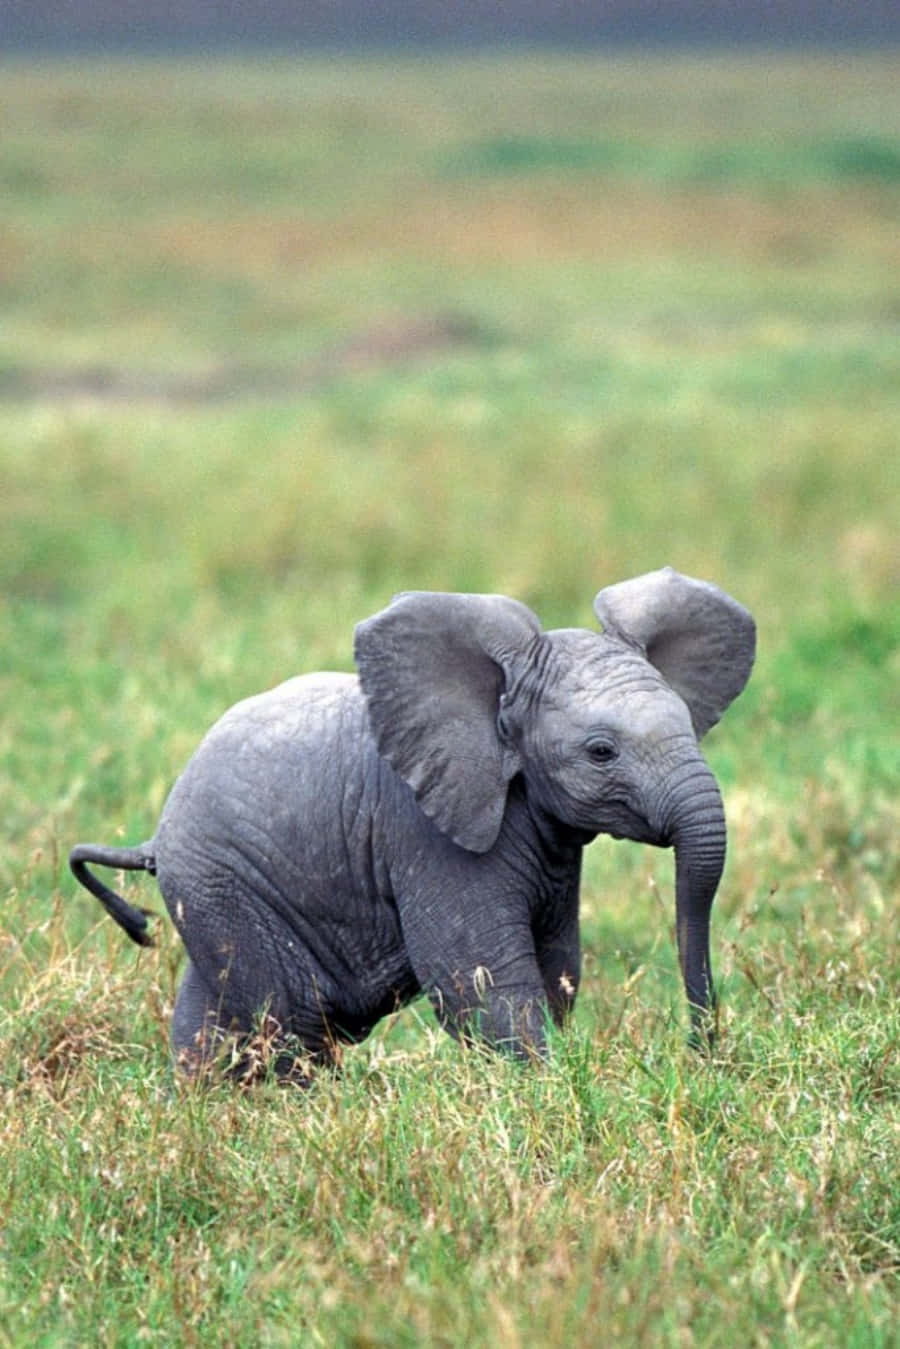 Guardaquanto È Adorabile Questo Elefante!